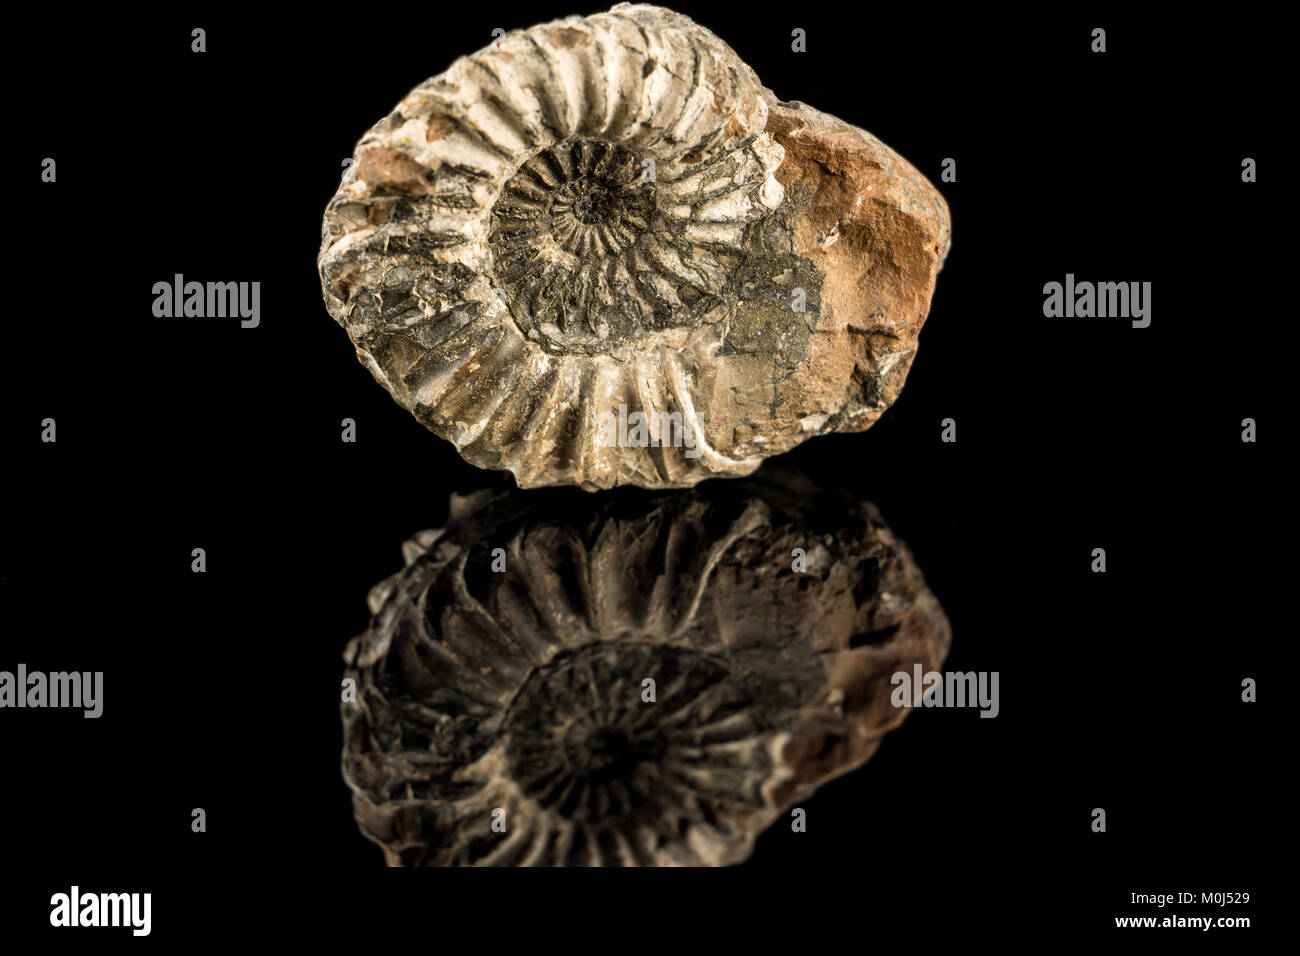 Snail fossil immagini e fotografie stock ad alta risoluzione - Alamy